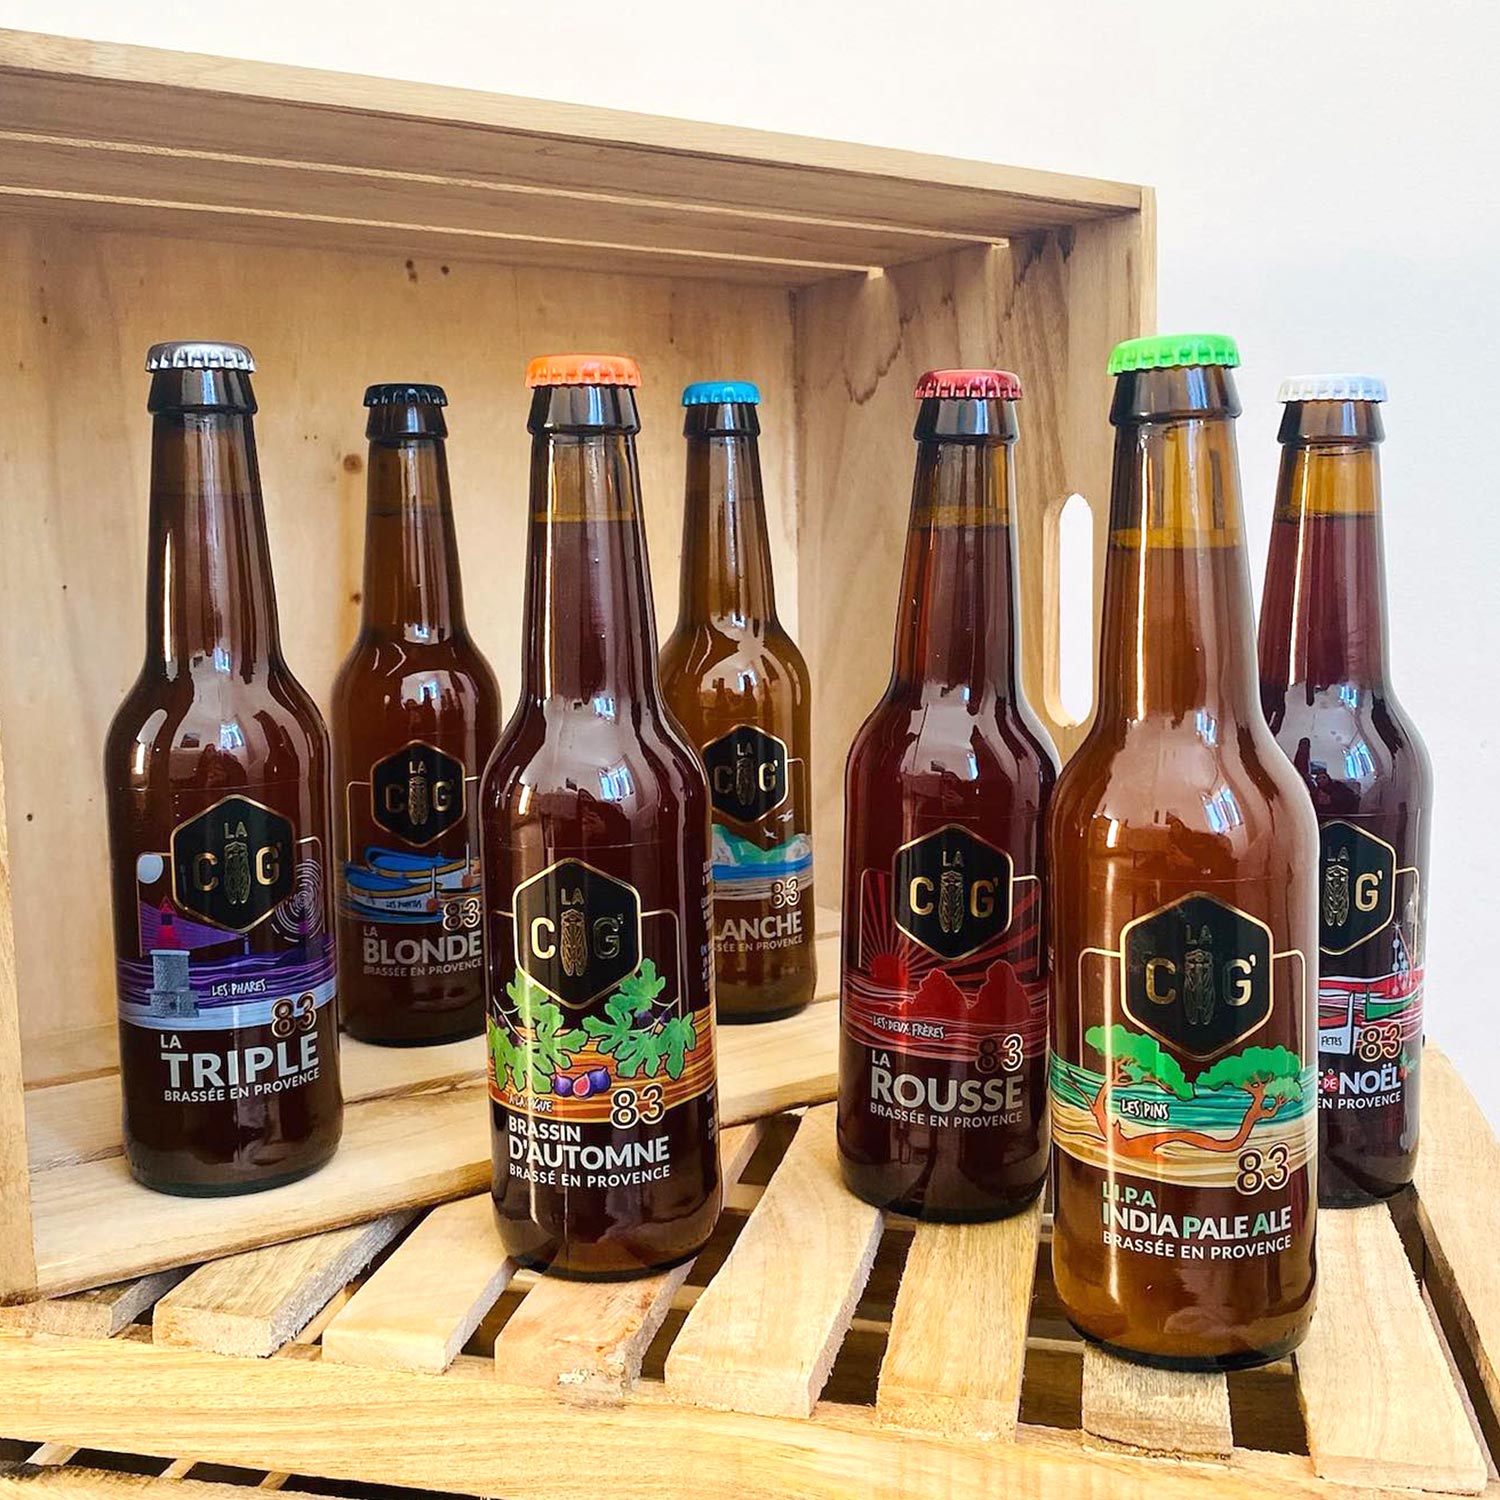 Ensemble des bouteilles de bières de la brasserie La Cig, située à la Seyne-sur-Mer dans le Var, etiquettes transparentes et colorées crées par Yunaima Oyola